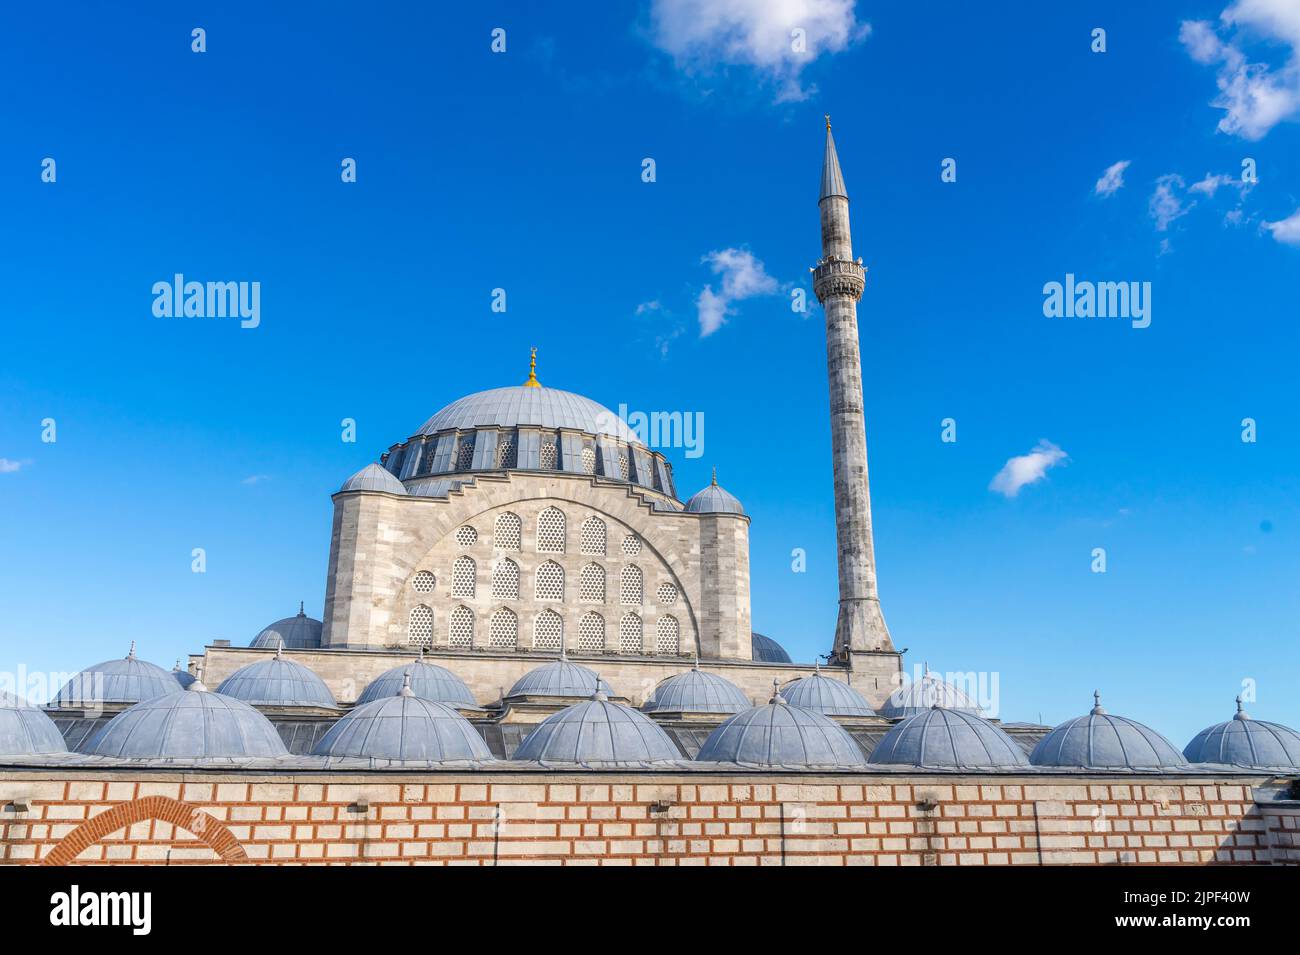 Moschea del Sultano di Mihrimah (Mihrimah Sultan Camii) - moschea ottomana costruita nel 1570. Architetto Mimar Sinan. Edirnekapı, Istanbul, Turchia Foto Stock